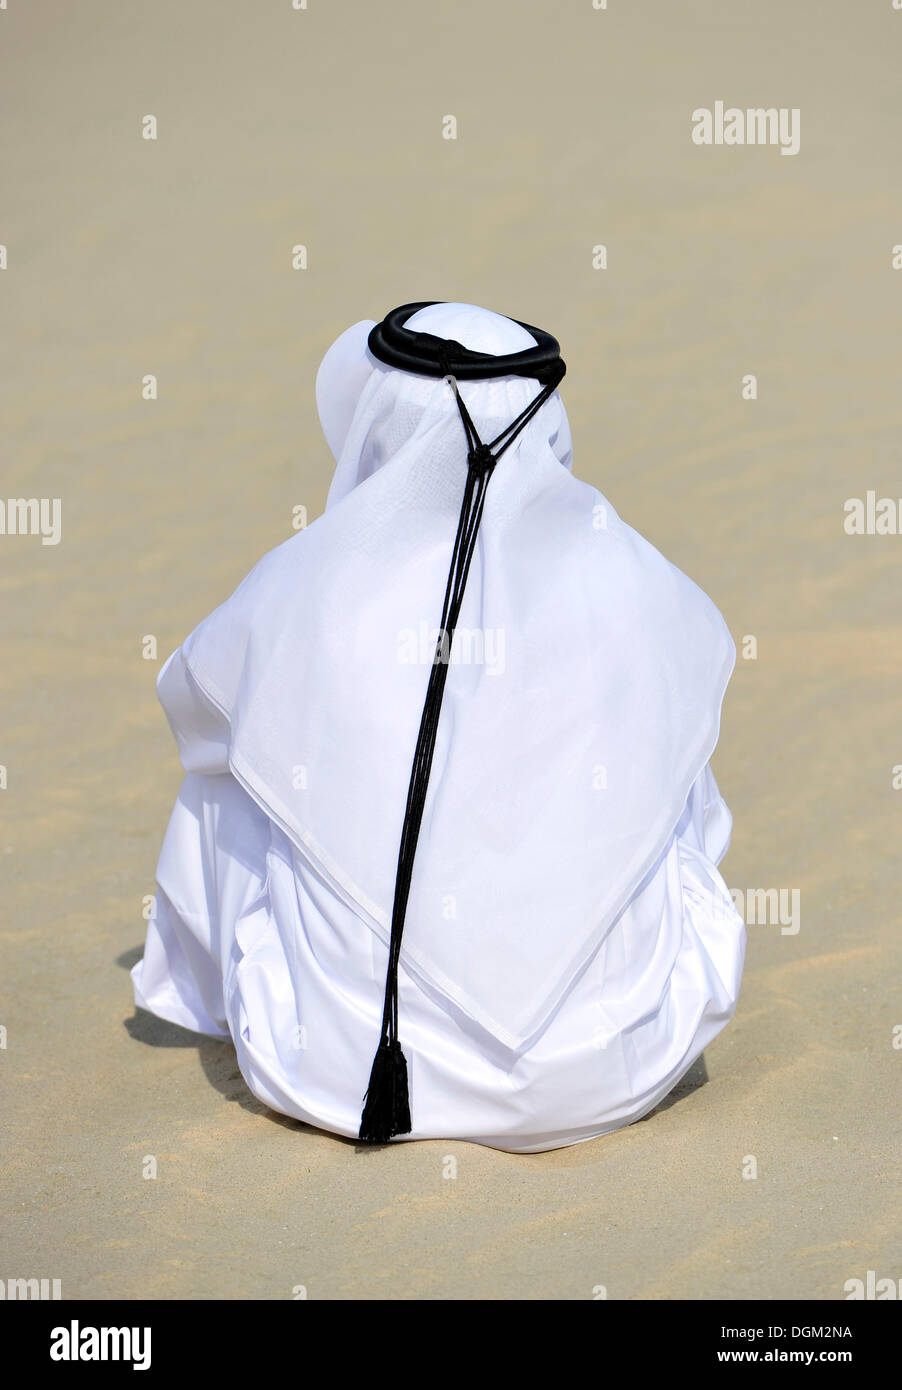 Porter des vêtements traditionnels avec qatari gutra et gland, voilée, l'émirat du Qatar, le golfe Persique, au Moyen-Orient, en Asie Banque D'Images